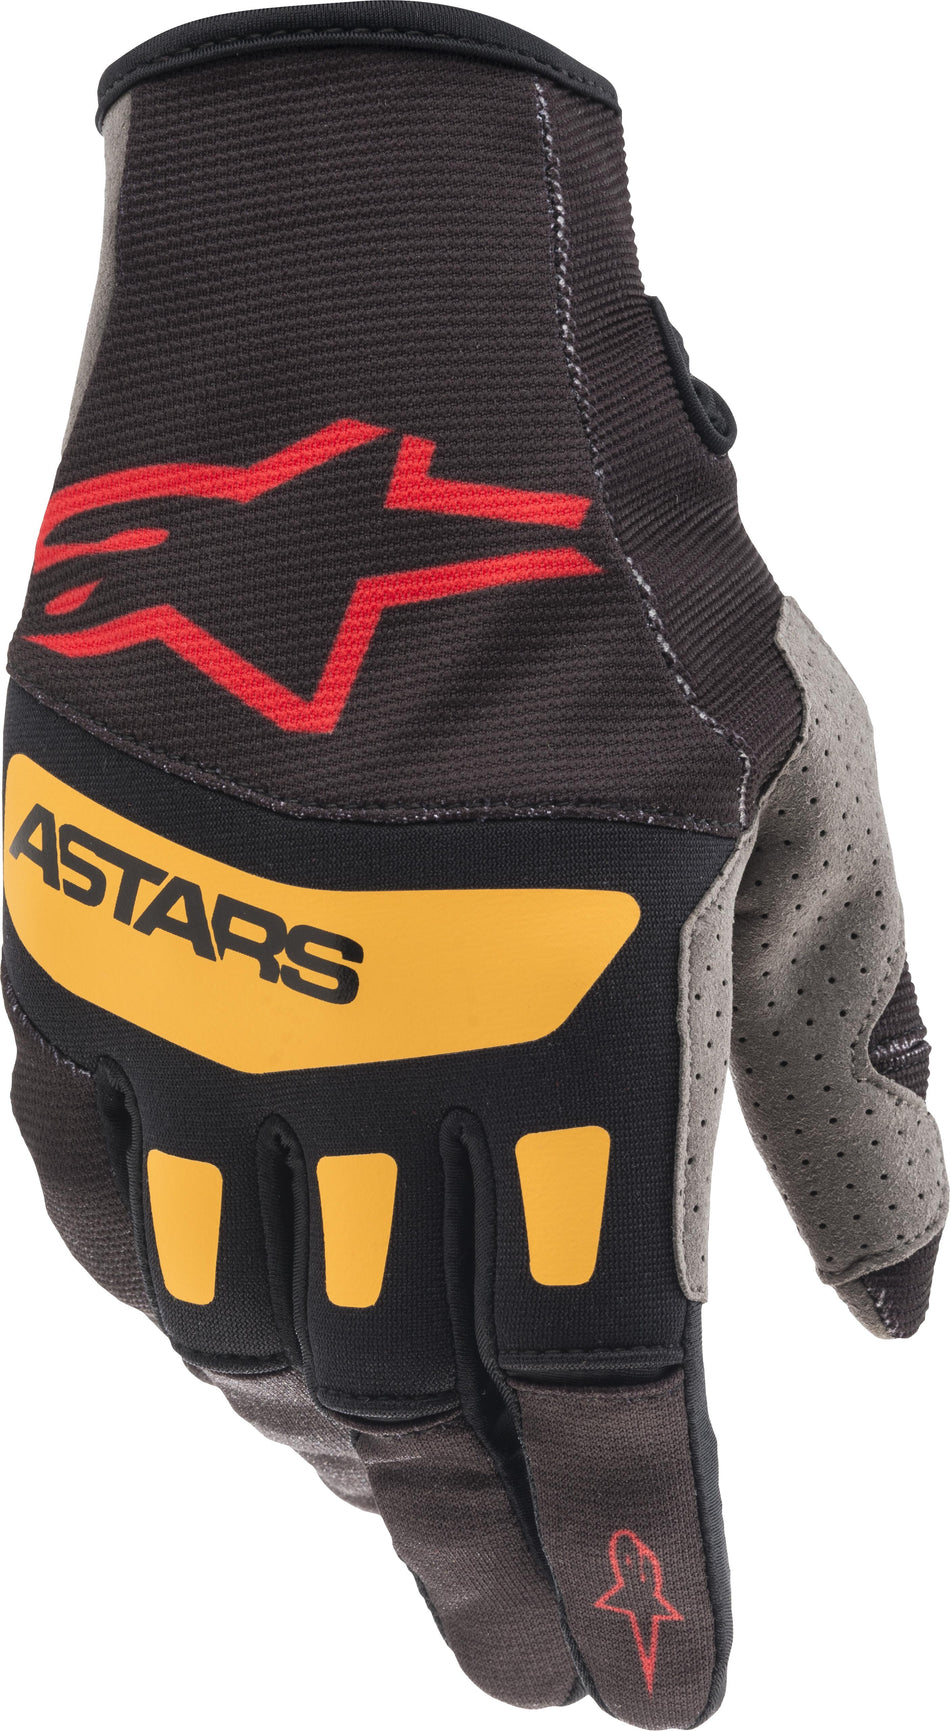 ALPINESTARS Techstar Gloves Black/Bright Red/Orange Xl 3561021-1344-XL